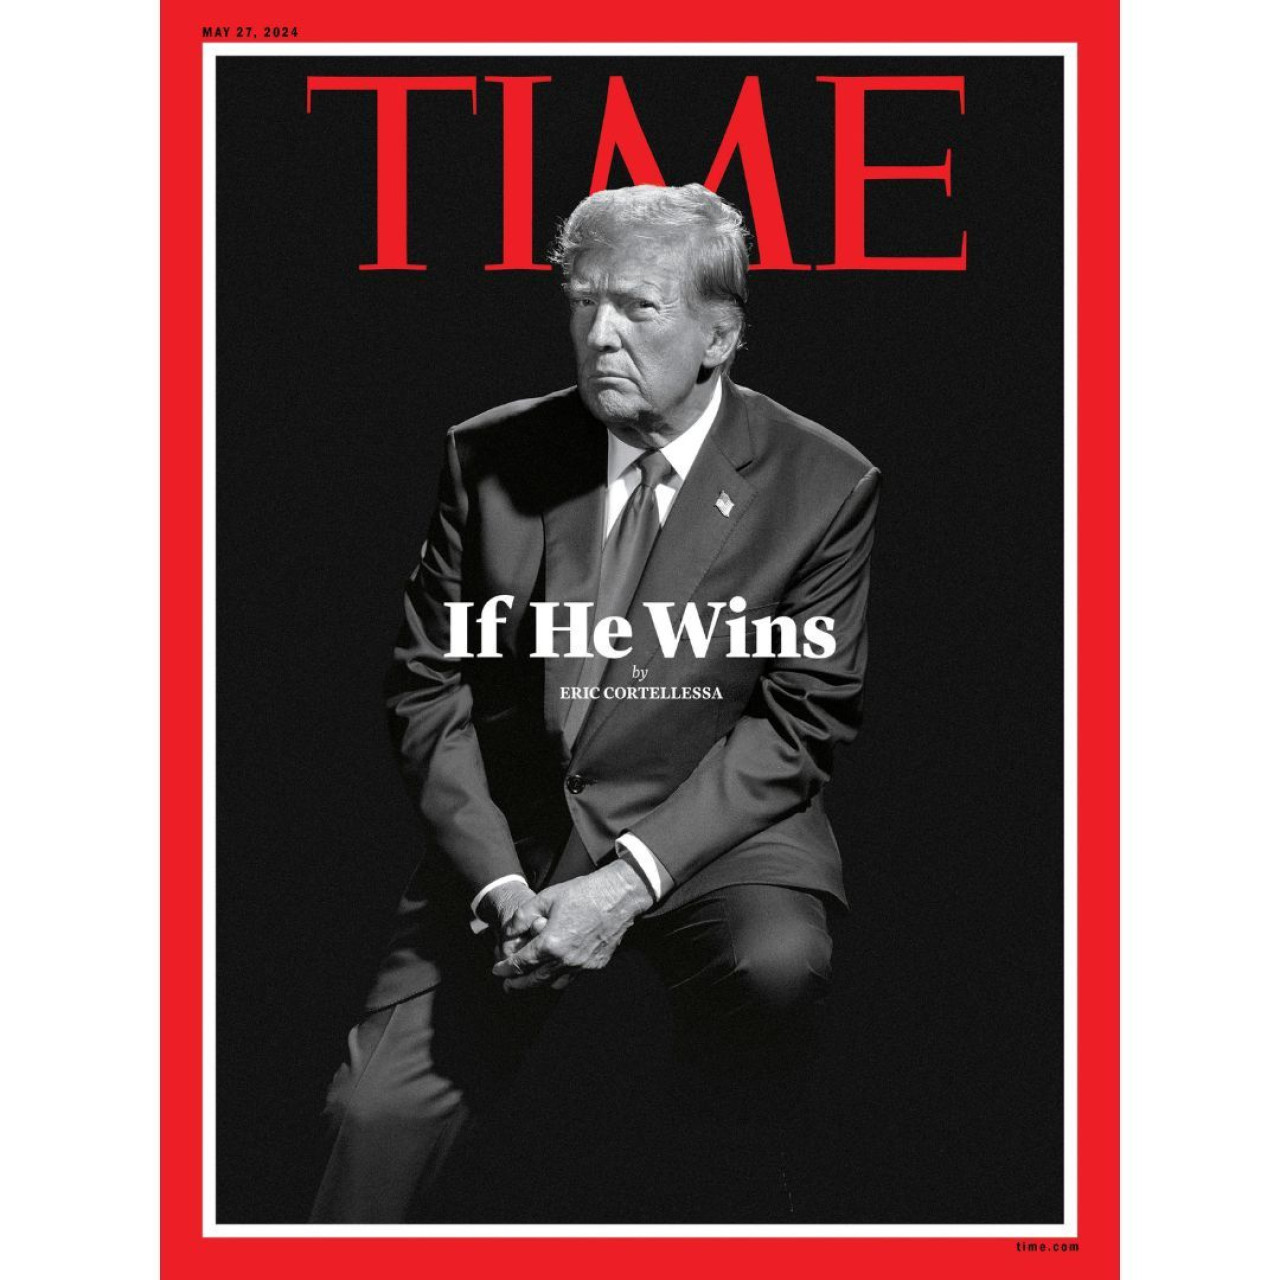 Donald Trump, expresidente de Estados Unidos, en la tapa de la revista TIME. Foto: Instagram Time.